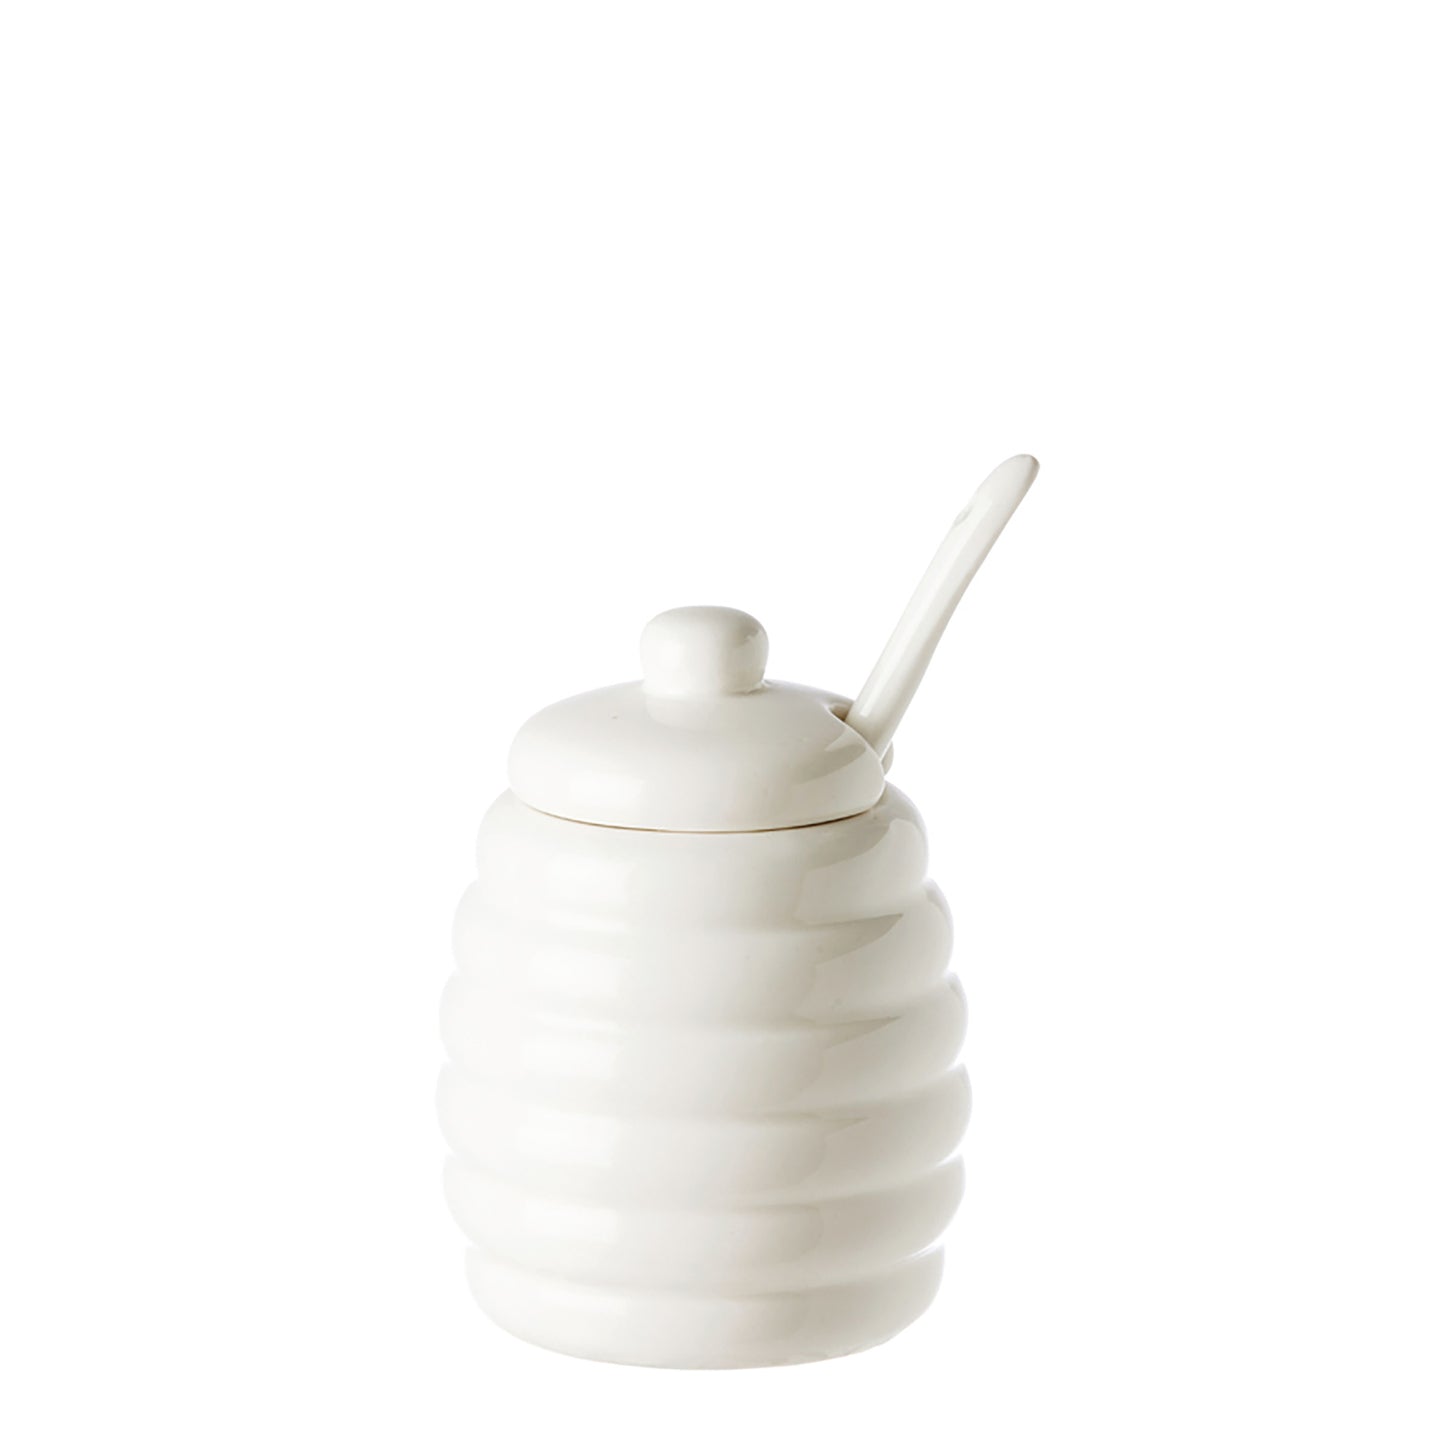 Zuccheriera in porcellana bianca lavorata con cucchiaino. Dimensioni h10 cm, Ø 6,5 Lavabile in lavastoviglie Utilizzabile in microonde Utilizzabile in forno tradizionale